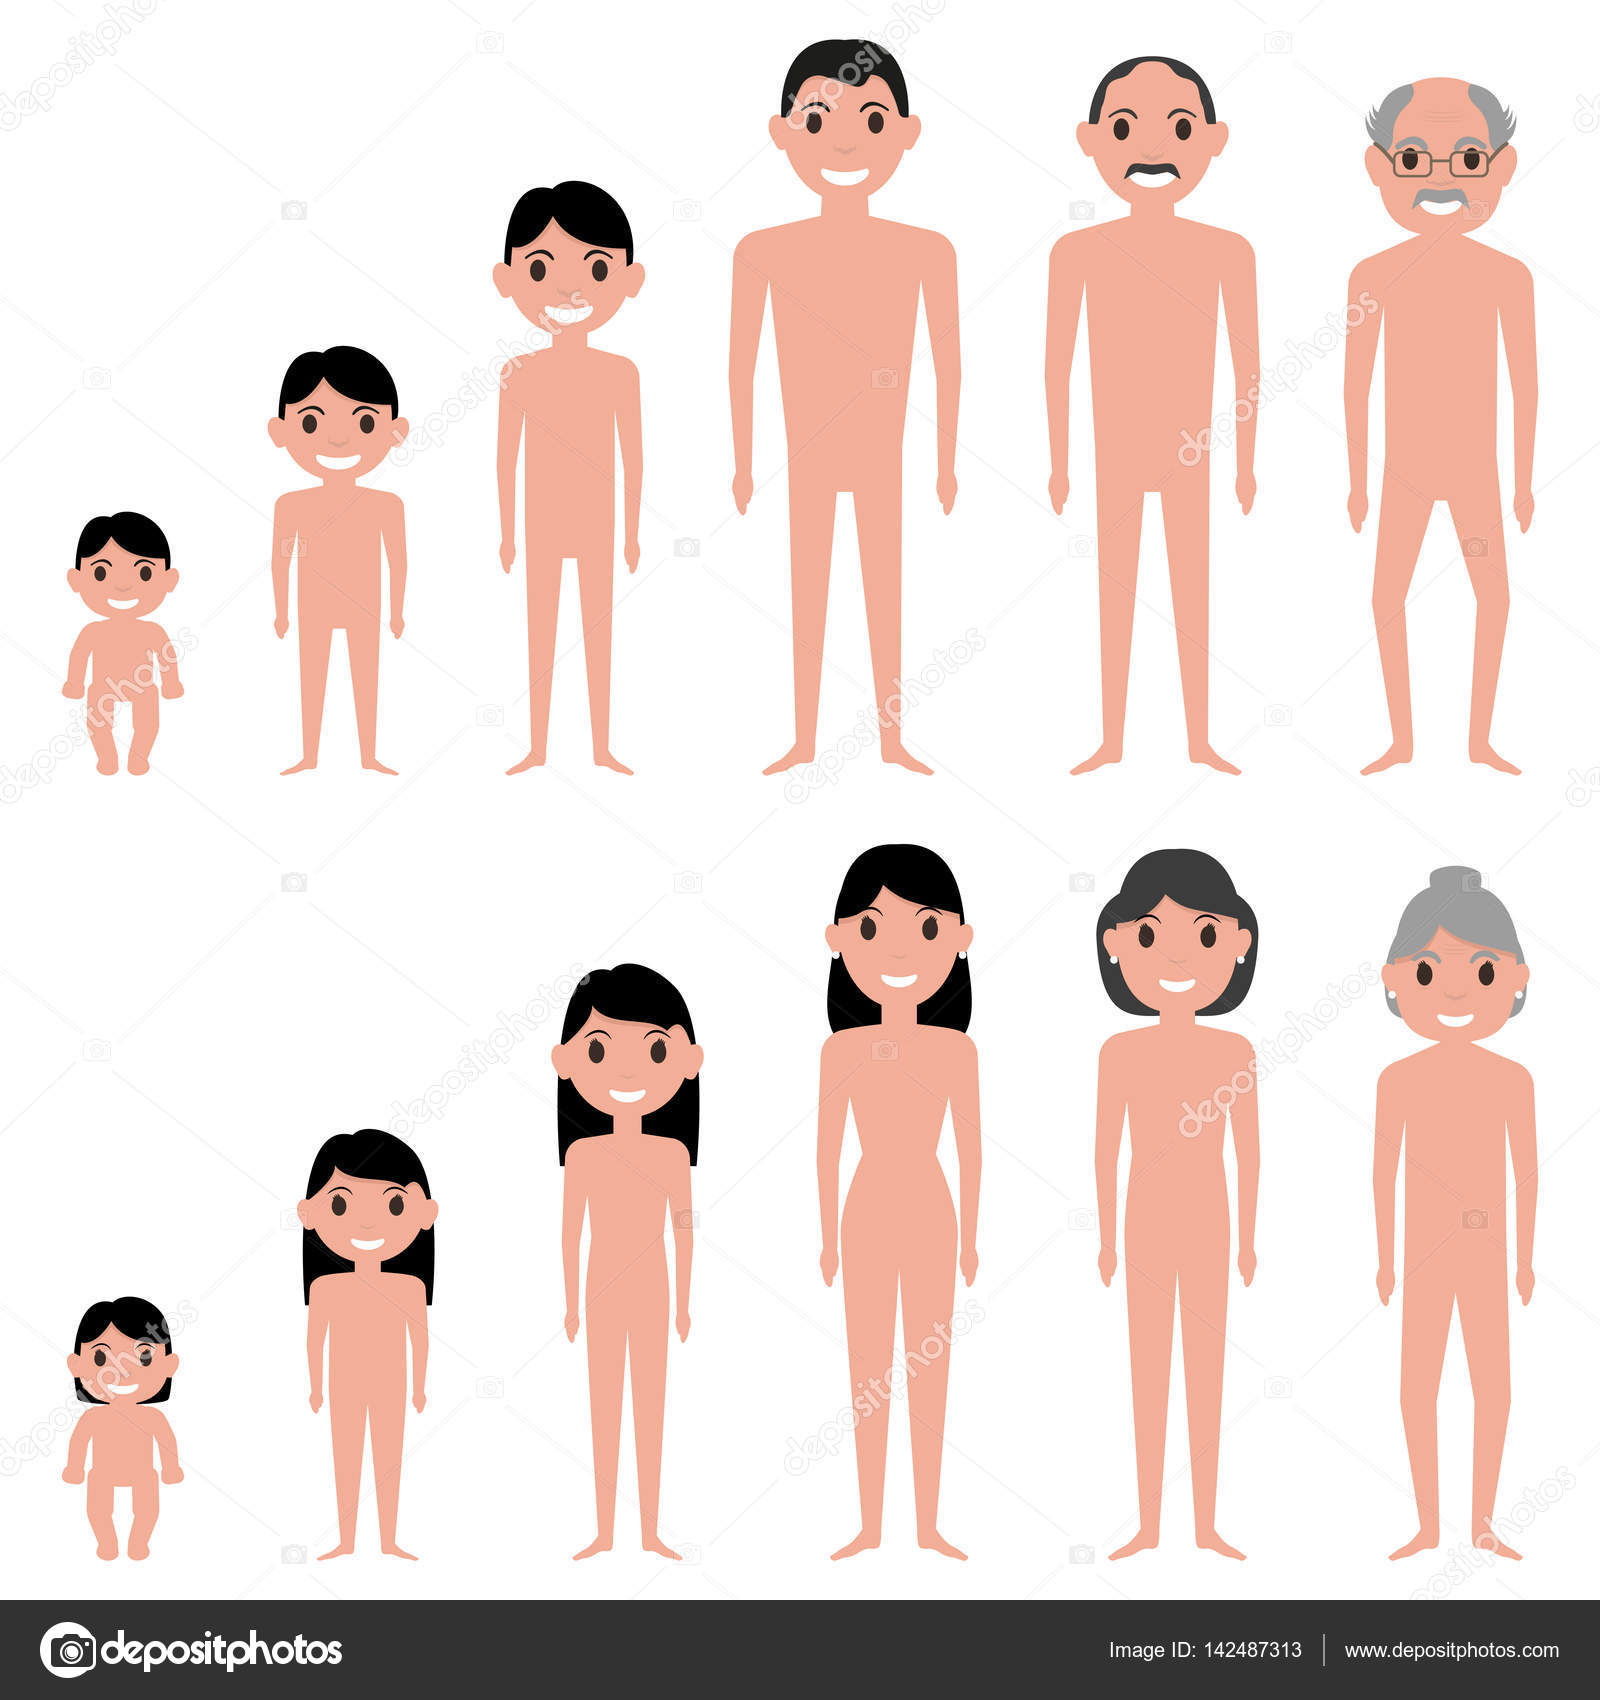 https://st3.depositphotos.com/7177640/14248/v/1600/depositphotos_142487313-stock-illustration-vector-illustration-cartoon-human-aging.jpg